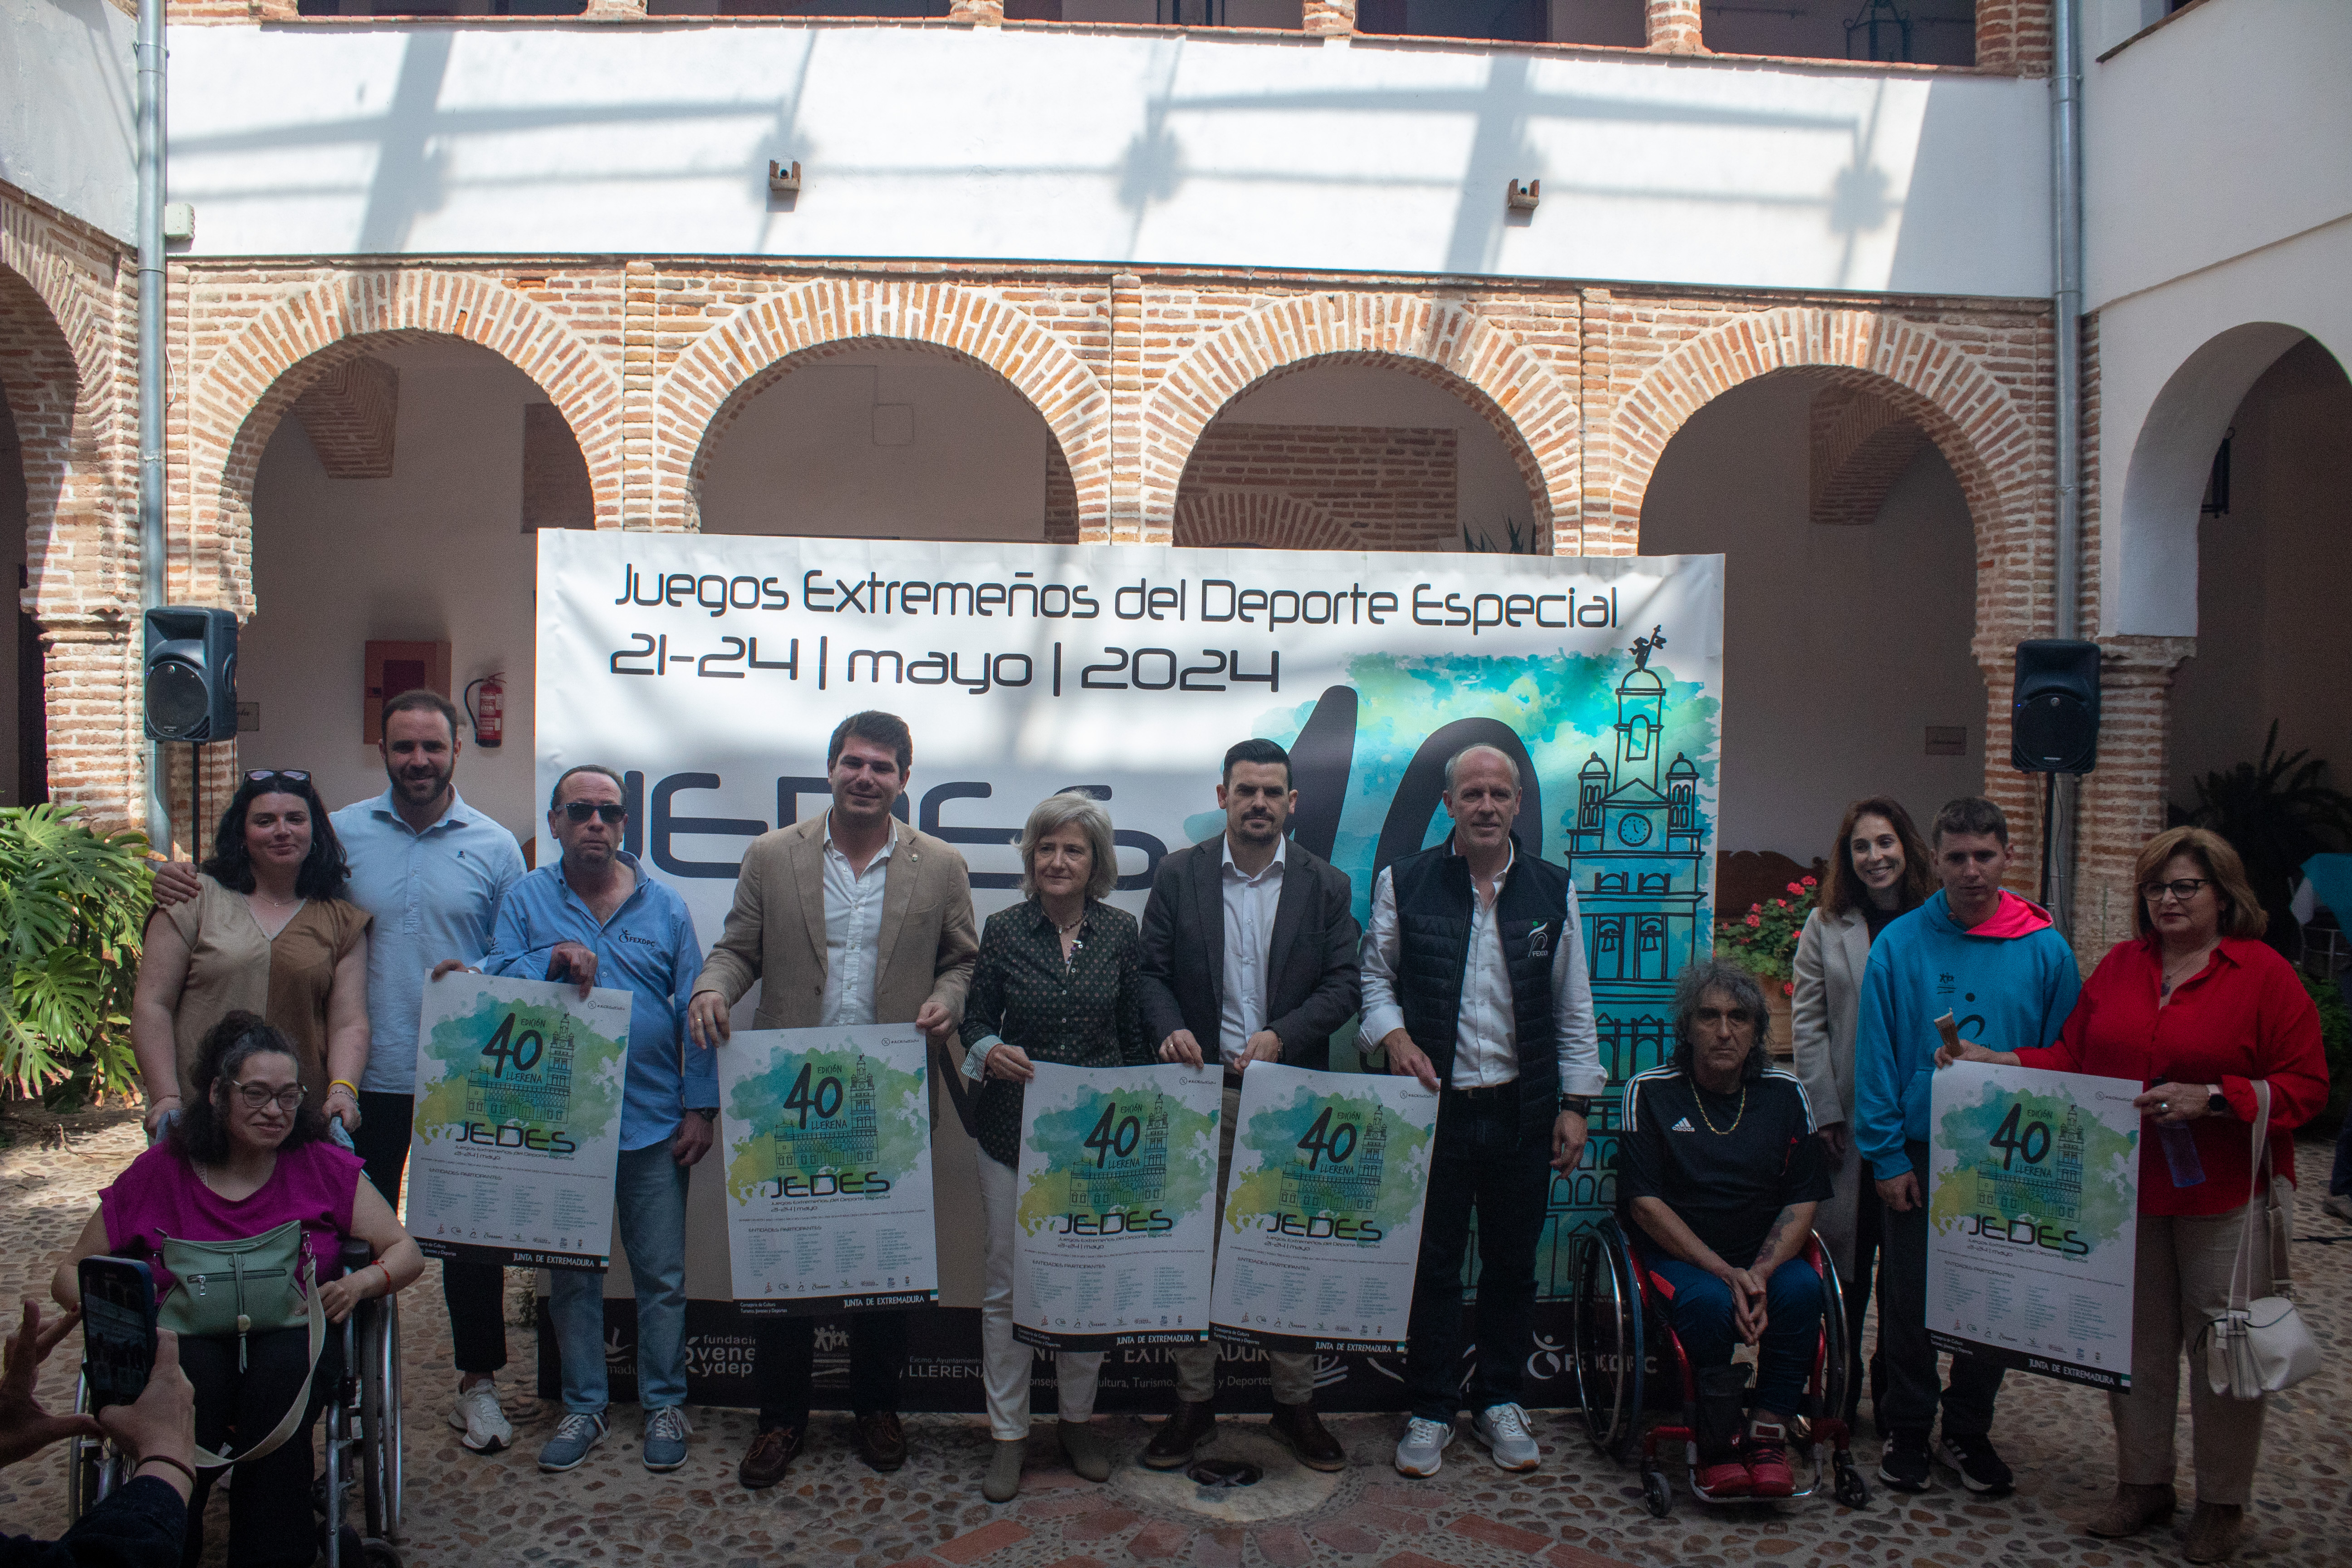 Image 3 of article Los Juegos Extremeños del Deporte Especial alcanzan su 40ª edición con una convivencia anual en Llerena del 21 al 24 de mayo